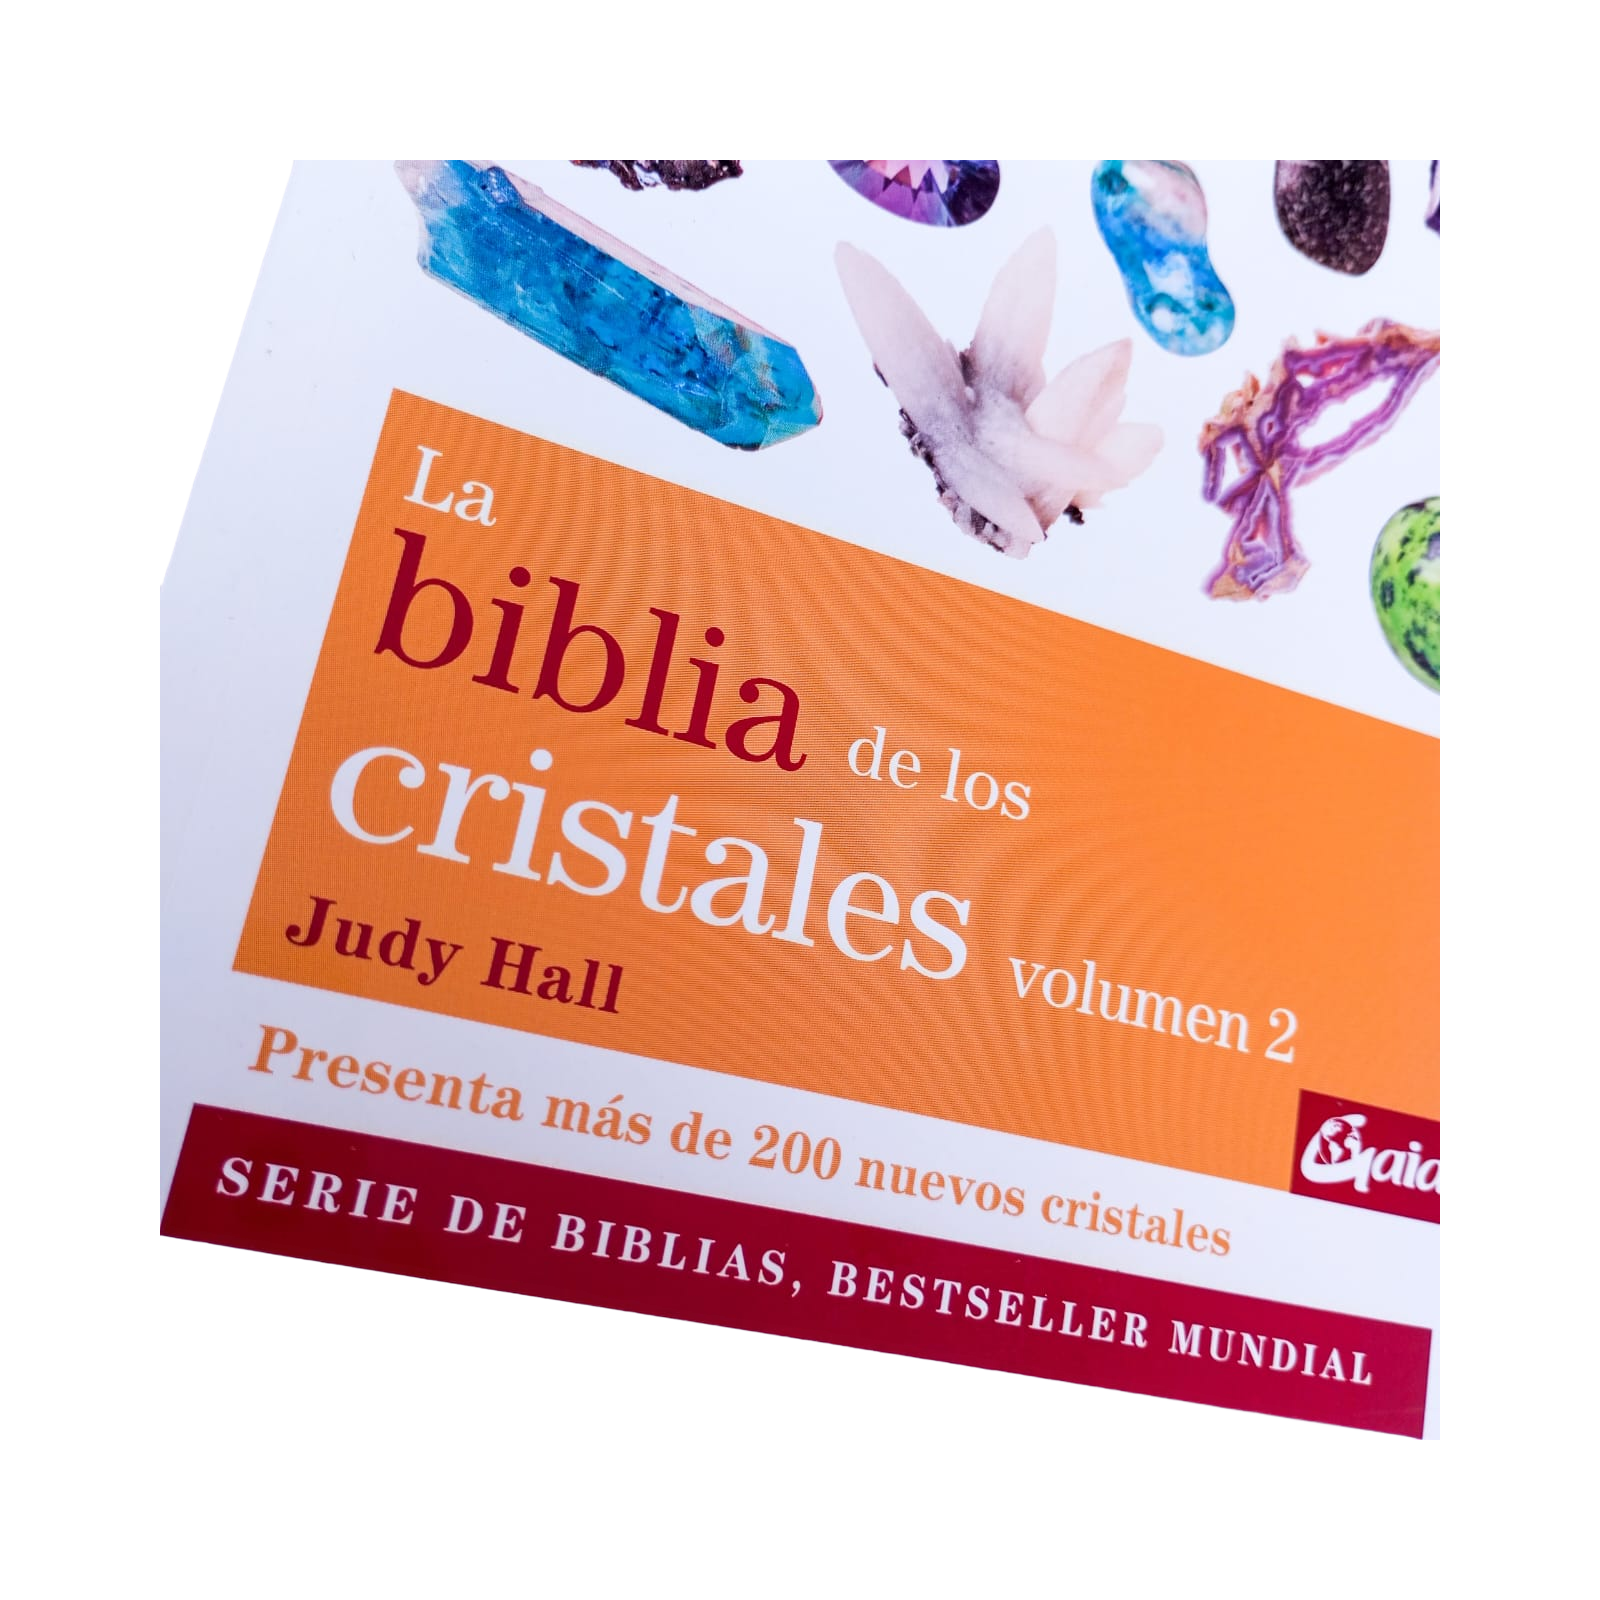 La biblia de los cristales. Volumen 3